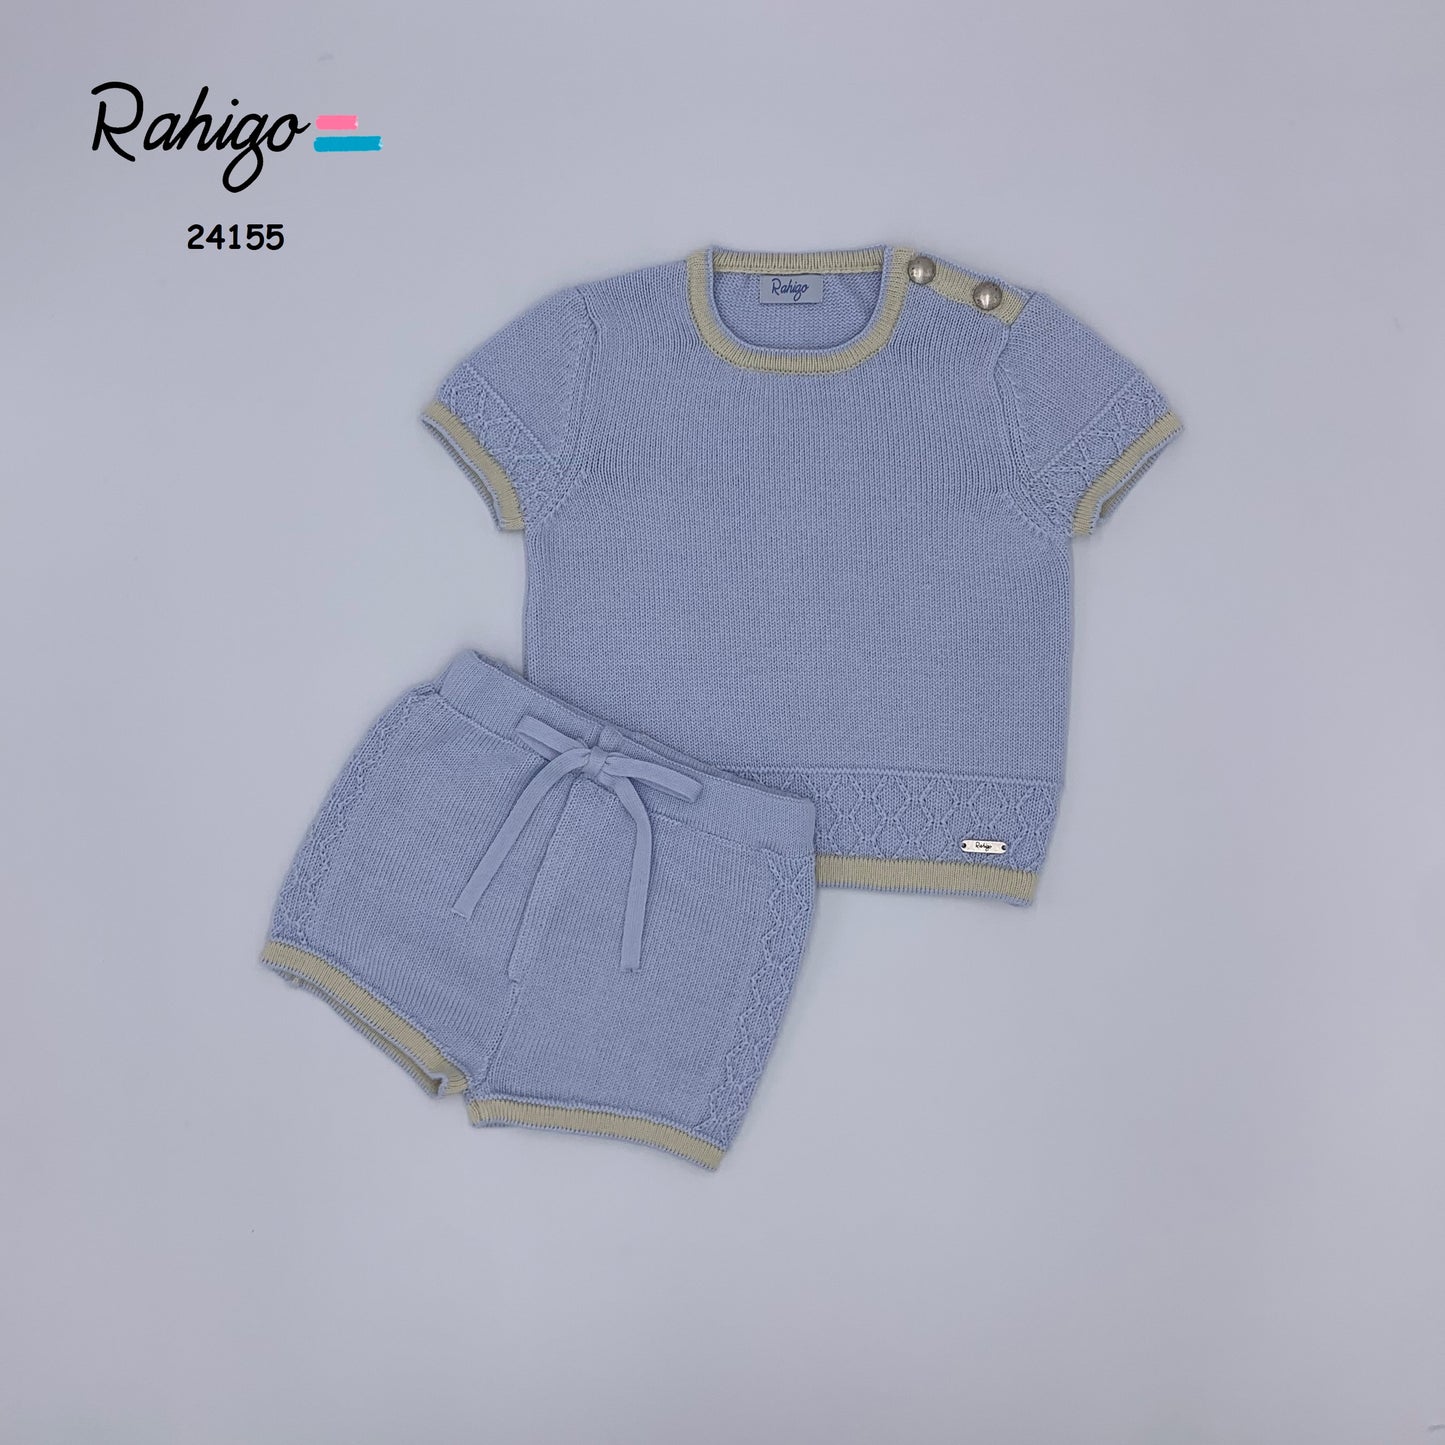 Rahigo Boys 2 Piece Blue/Cream Short Set SS24